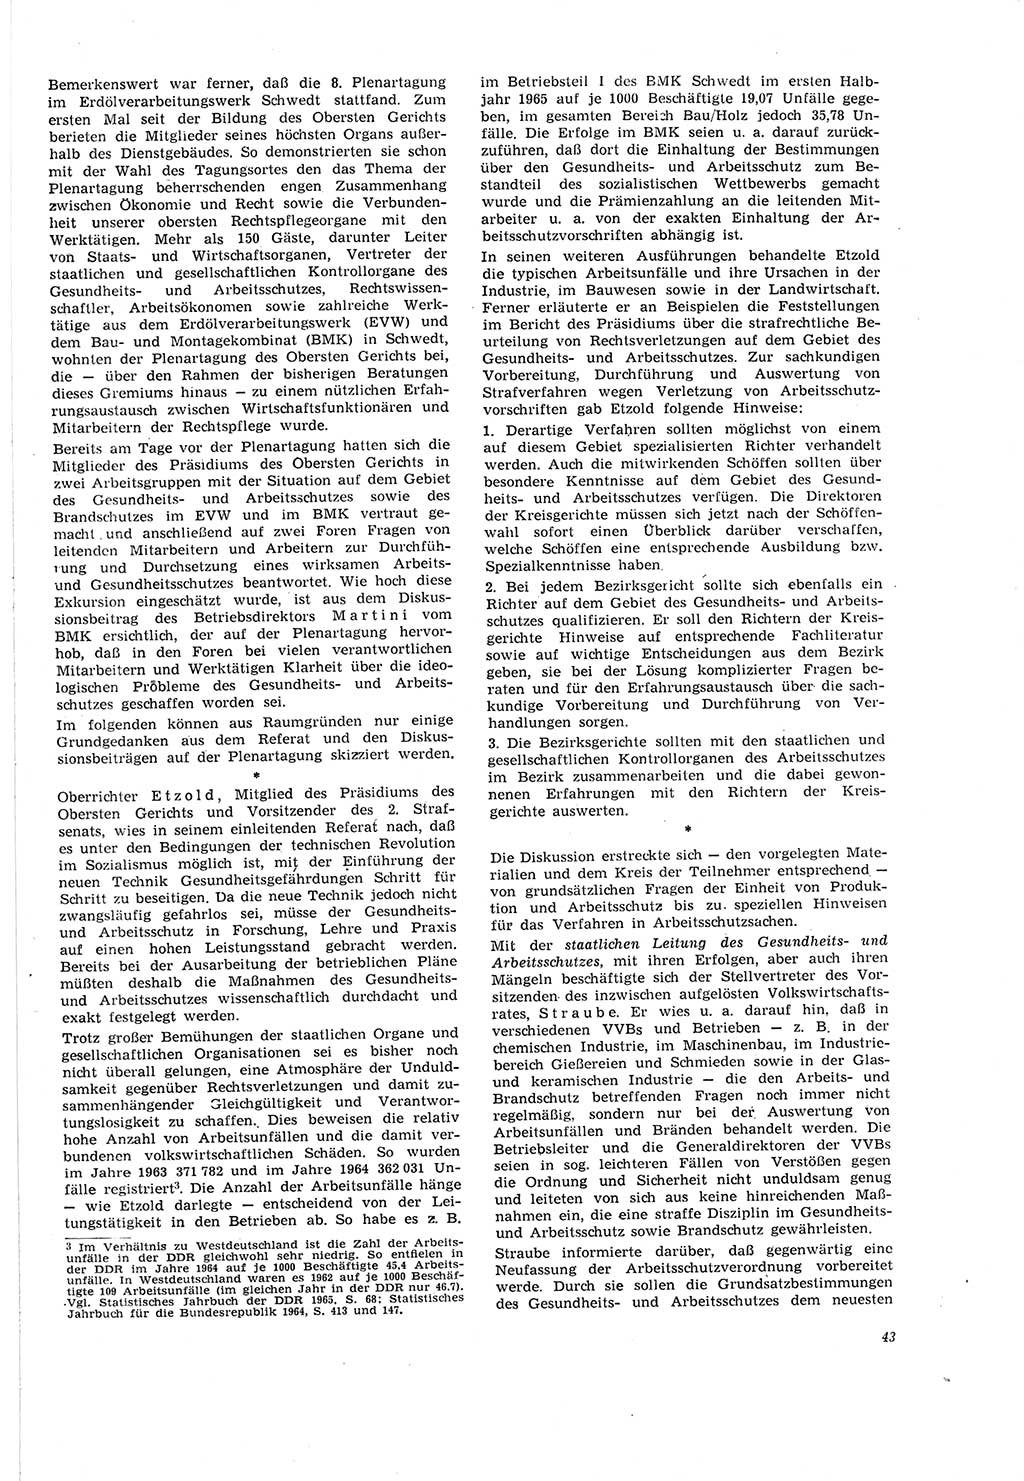 Neue Justiz (NJ), Zeitschrift für Recht und Rechtswissenschaft [Deutsche Demokratische Republik (DDR)], 20. Jahrgang 1966, Seite 43 (NJ DDR 1966, S. 43)